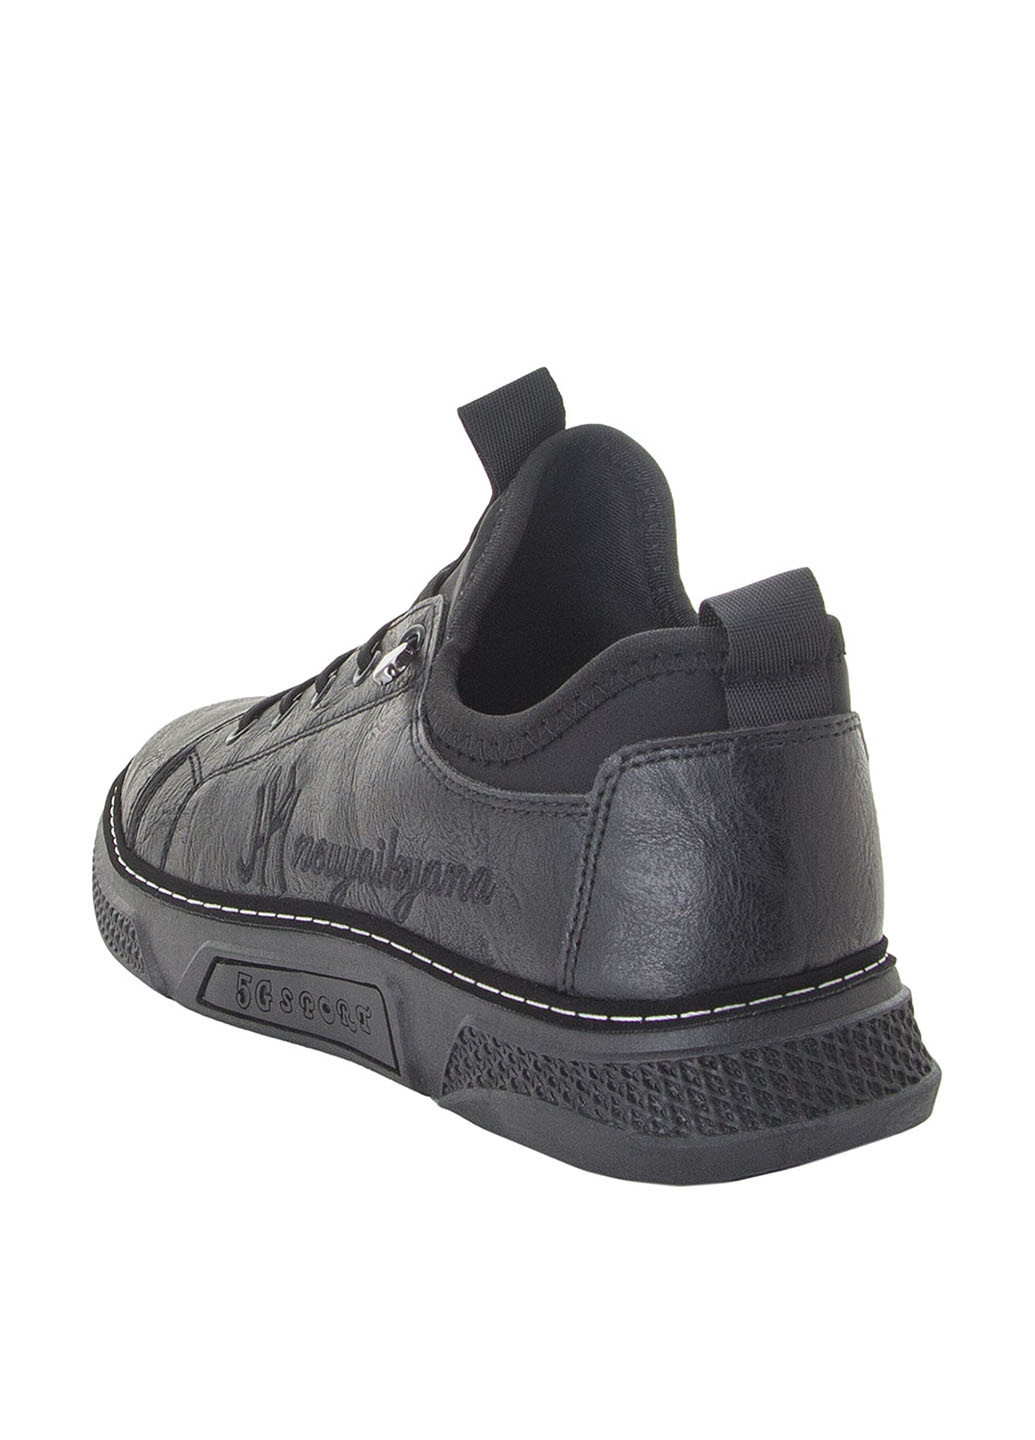 Черные спортивные туфли Erra на шнурках